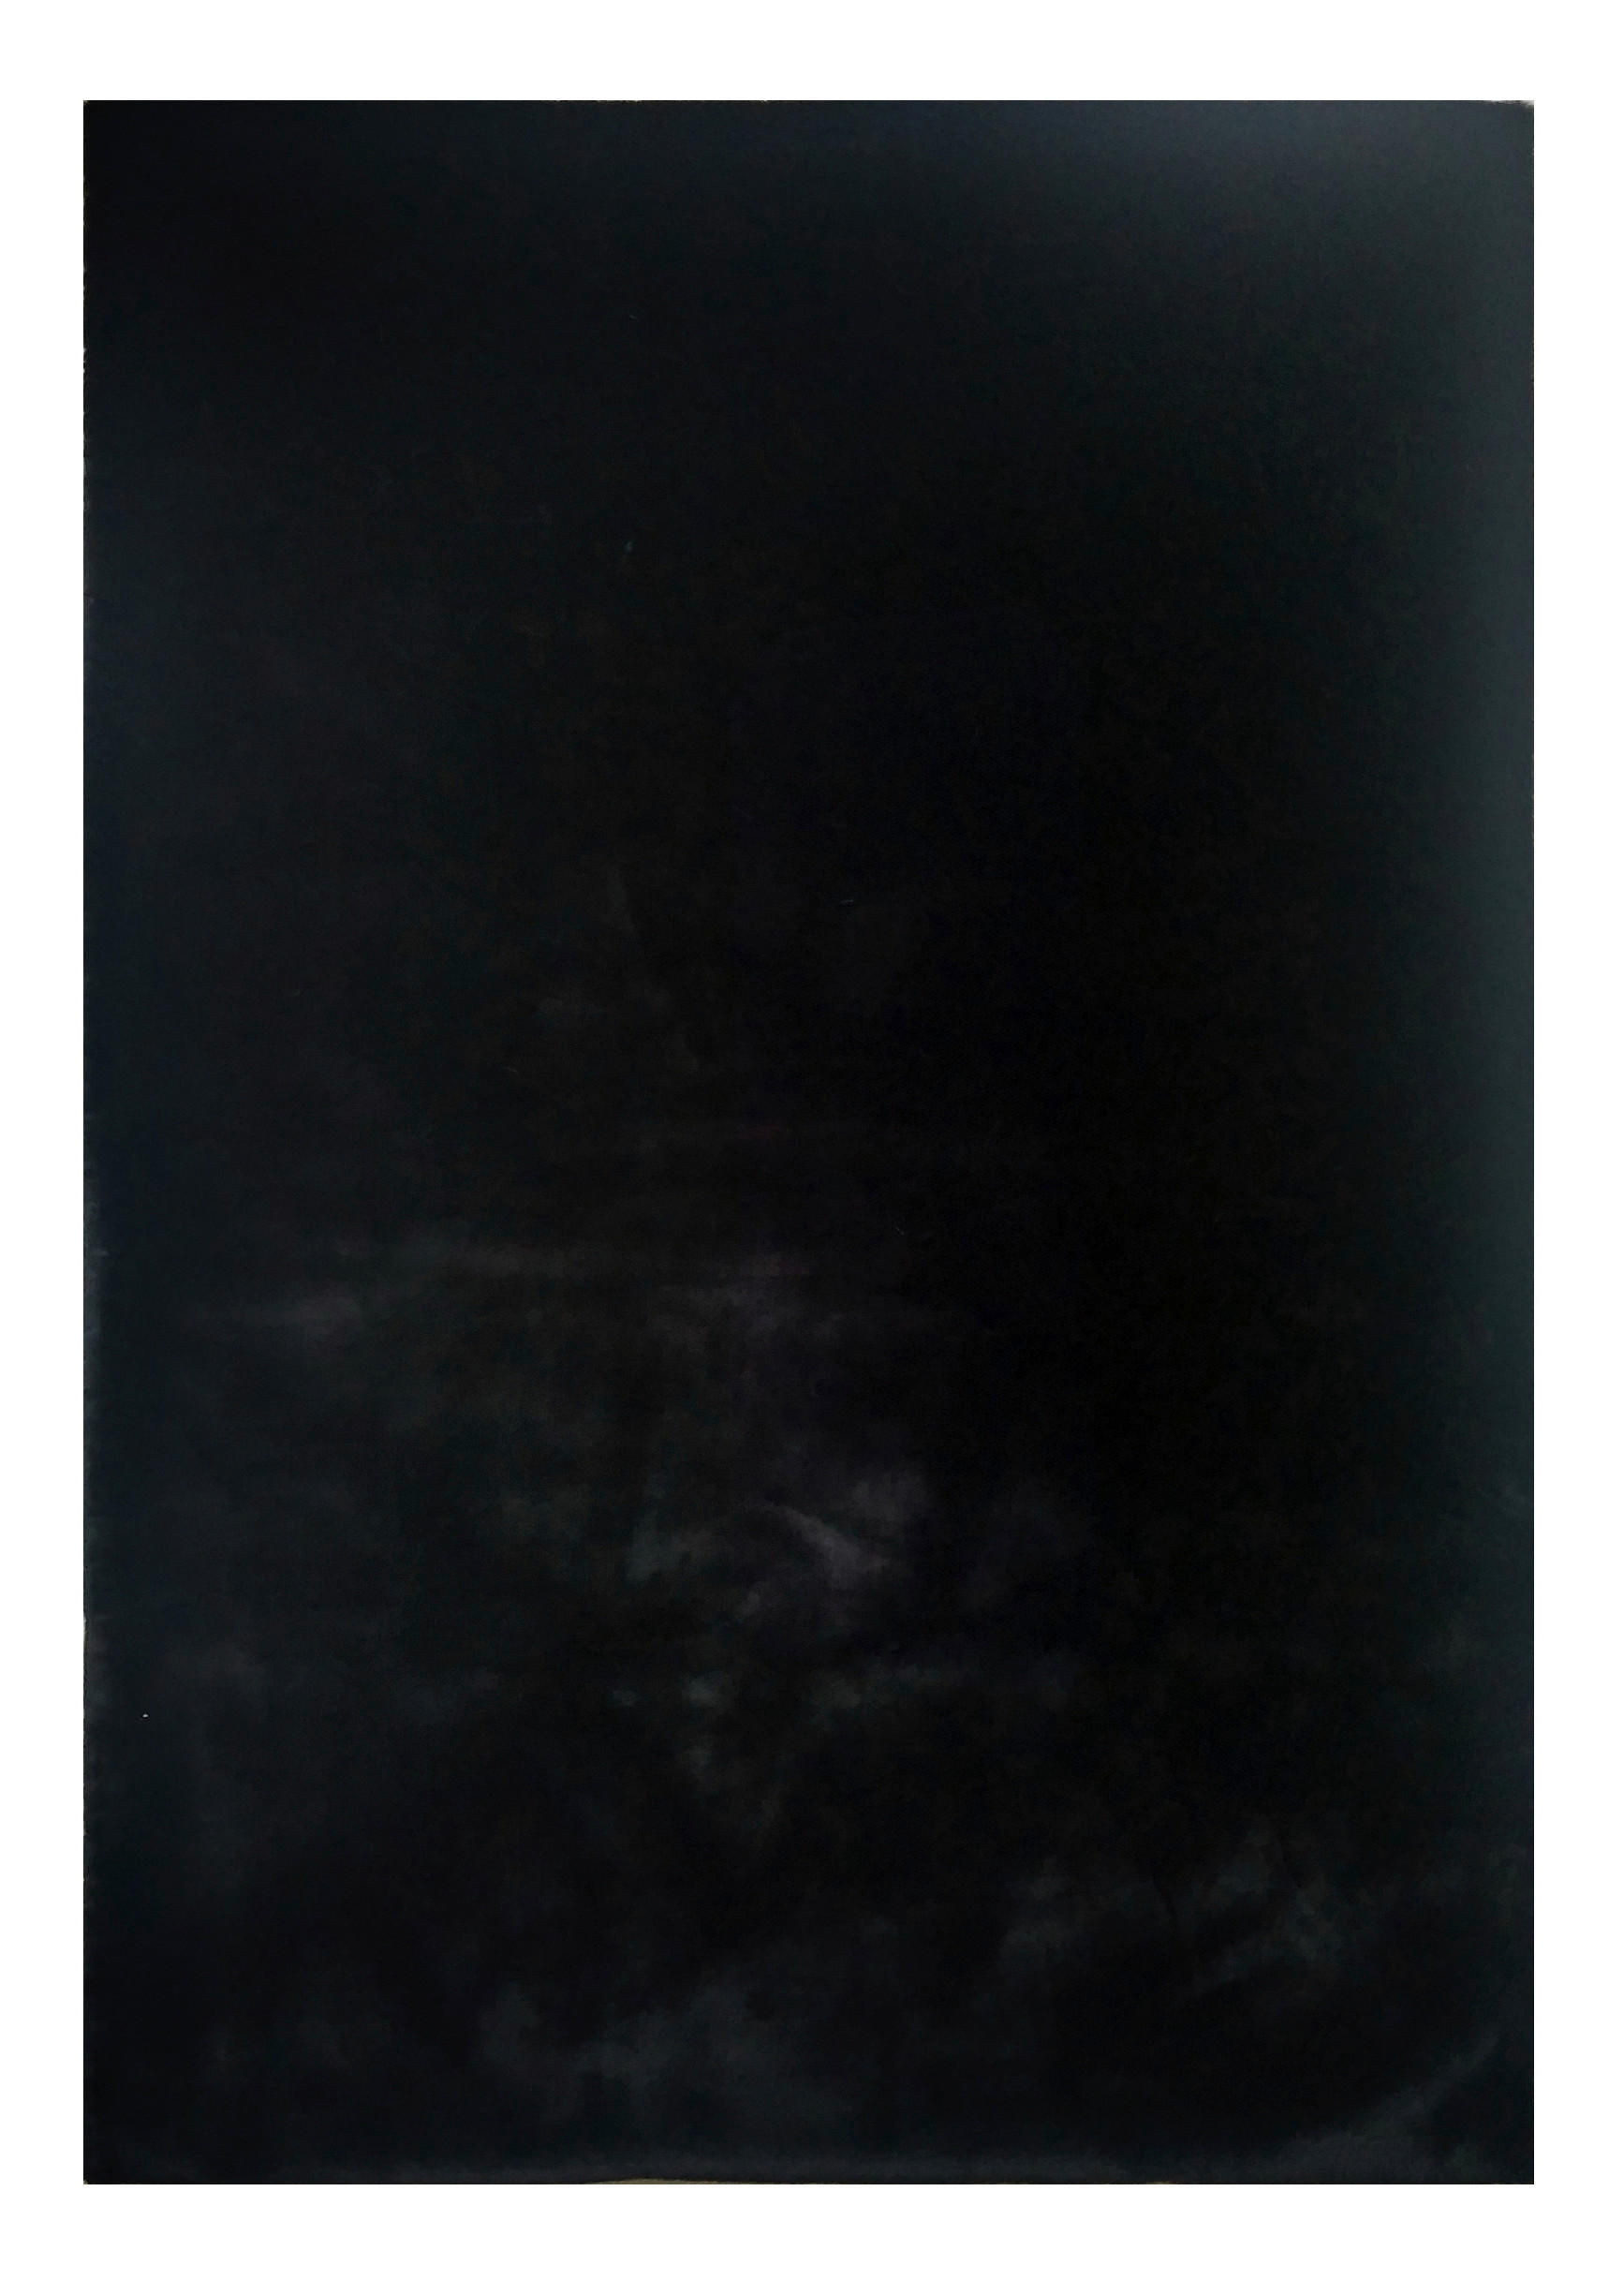 TEPIH VISOKOG FLORA  crna     - crna, Trend, tekstil (130/190cm) - Novel